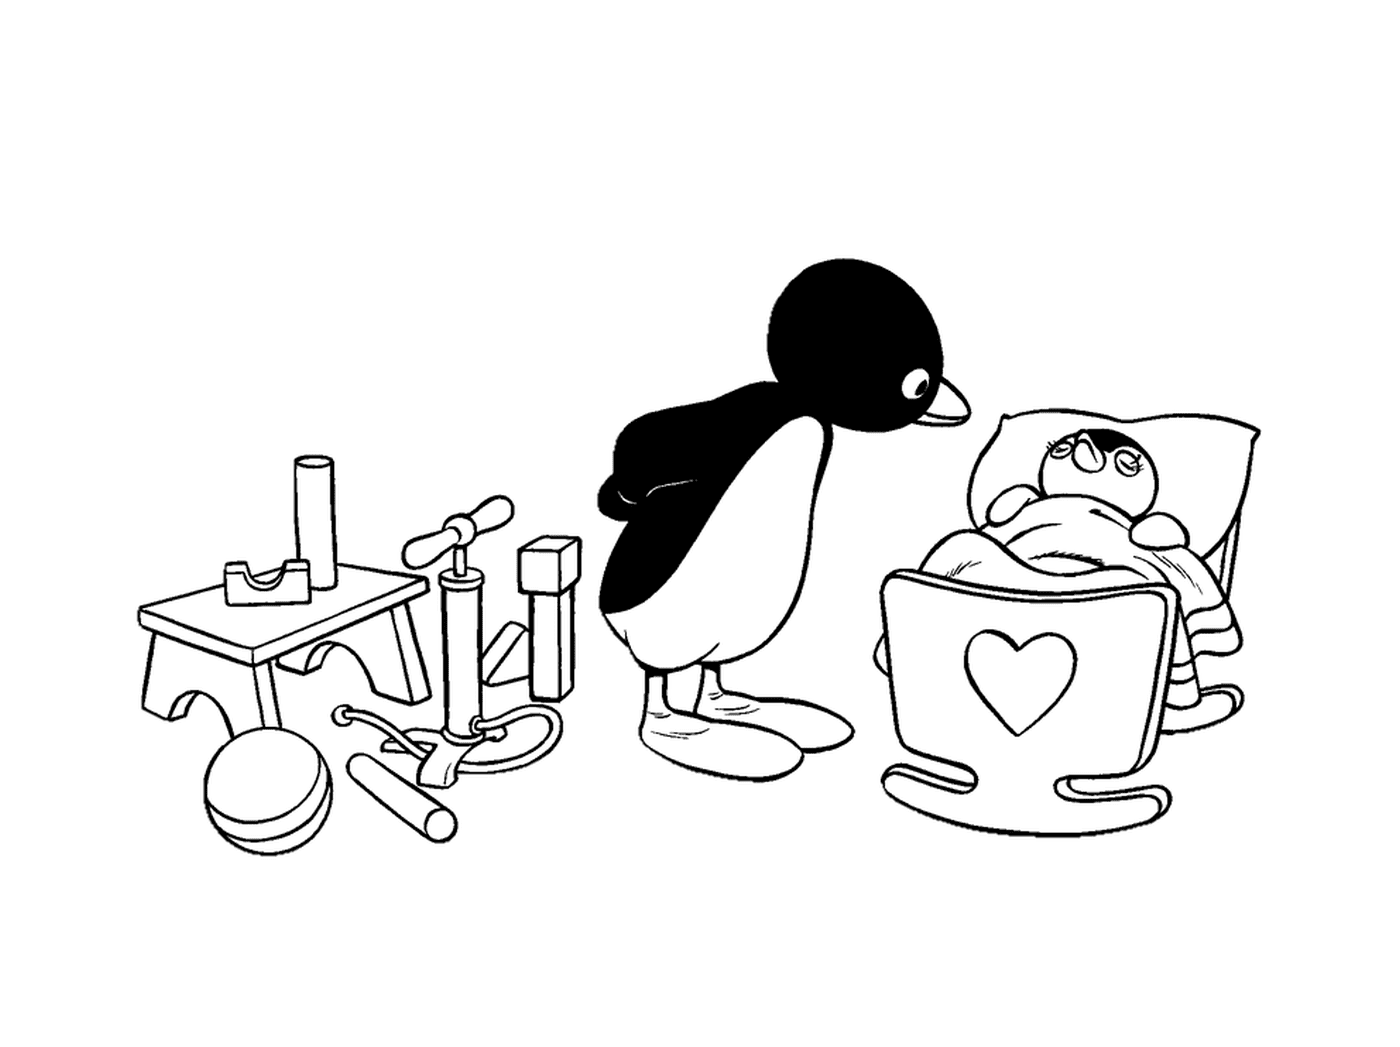  Pinguin und Babypinguin in einer Schüssel 